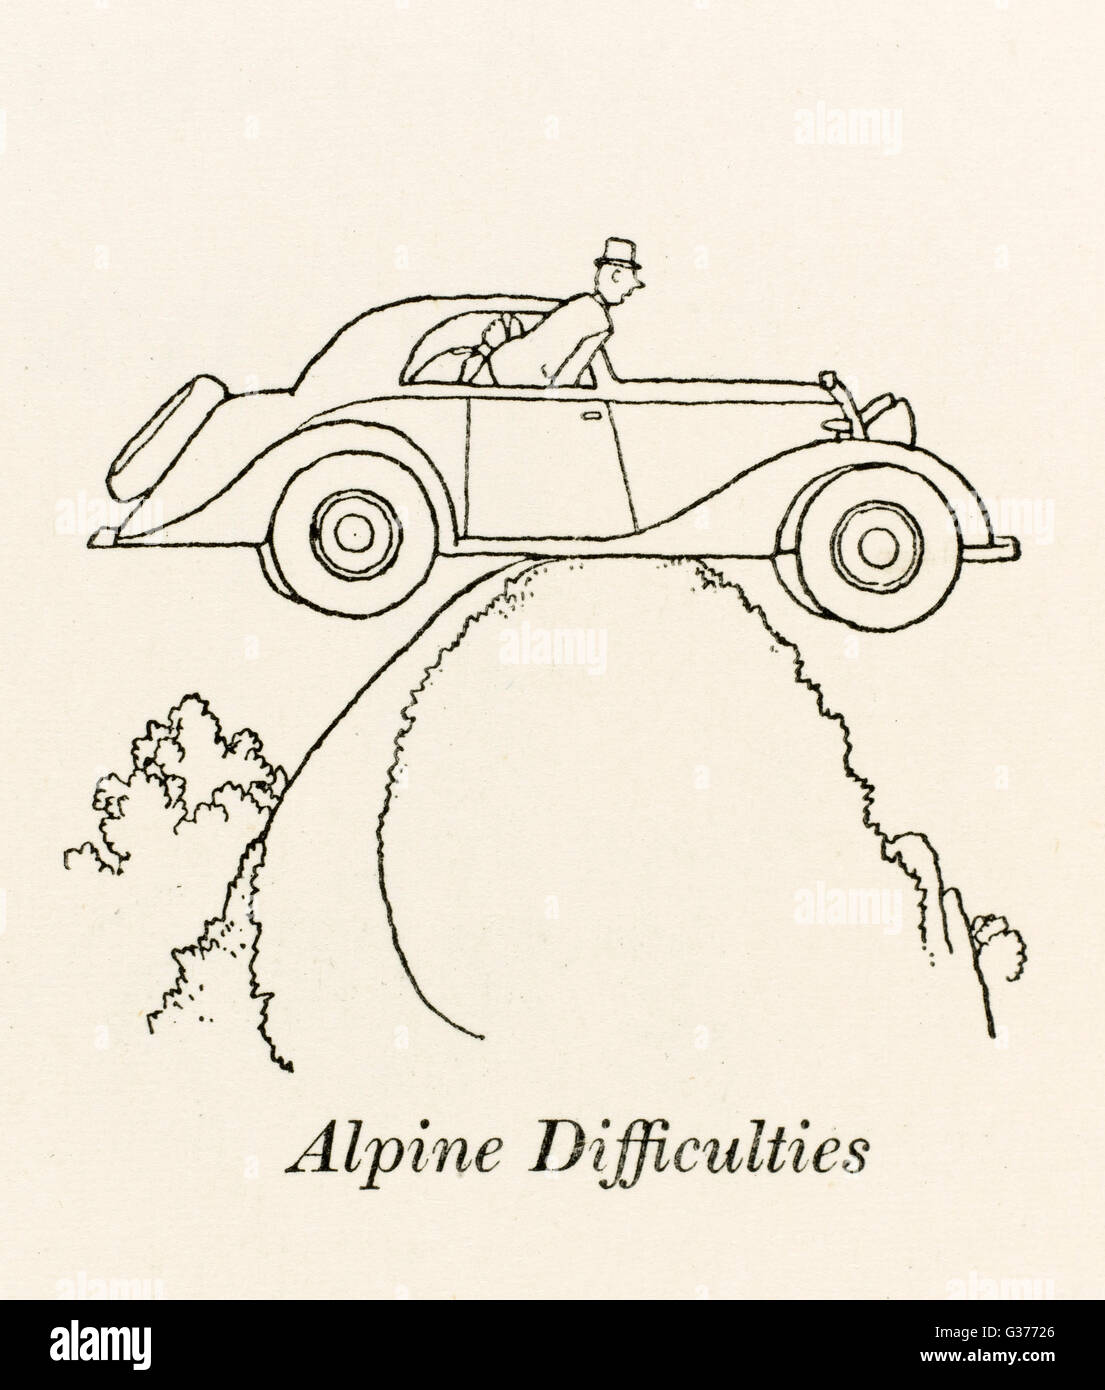 Difficoltà alpine - W Heath Robinson Foto Stock